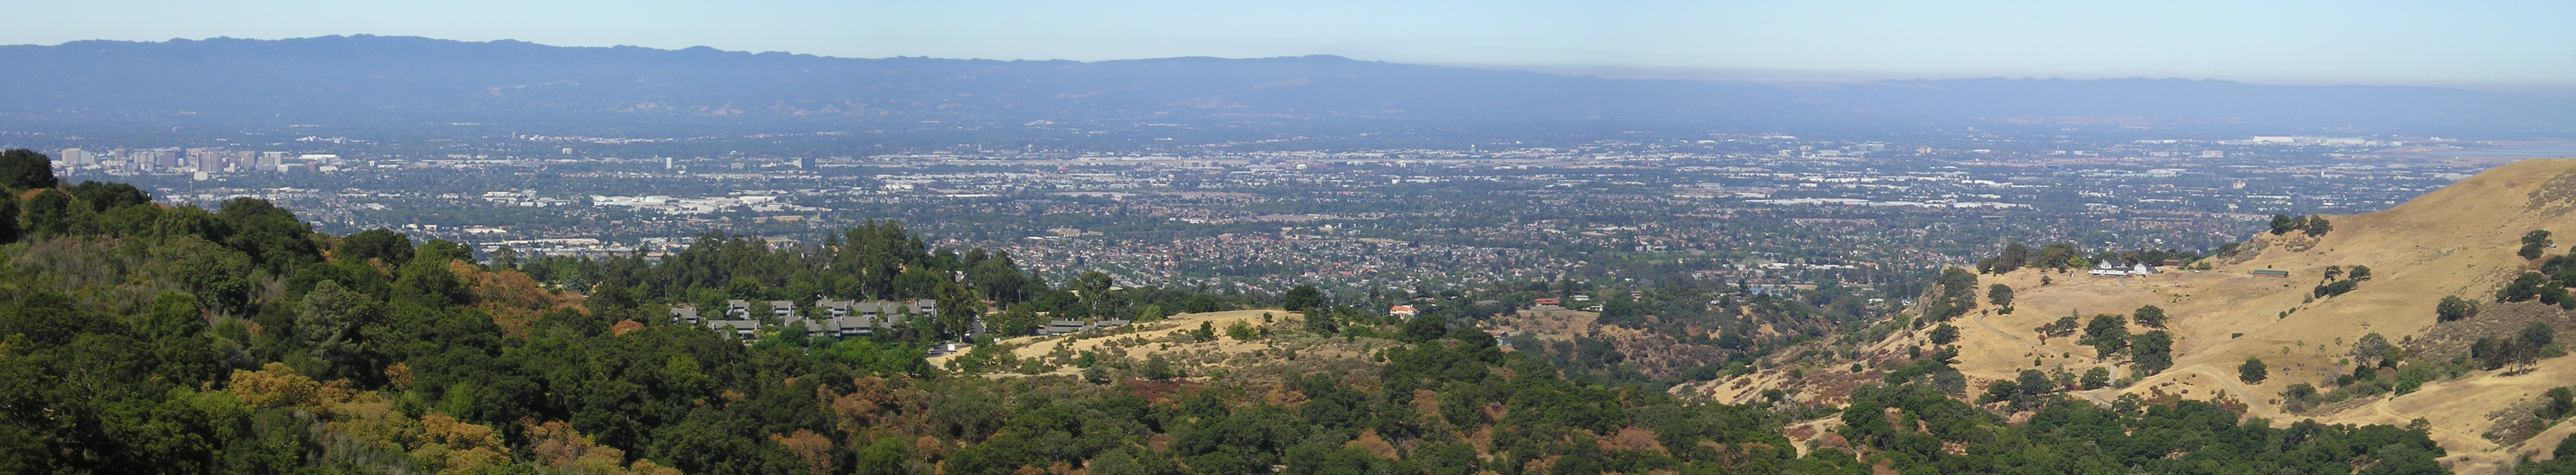 Un urbanisme étalé et peu verticalisé (Silicon Valley, Californie, États-Unis)